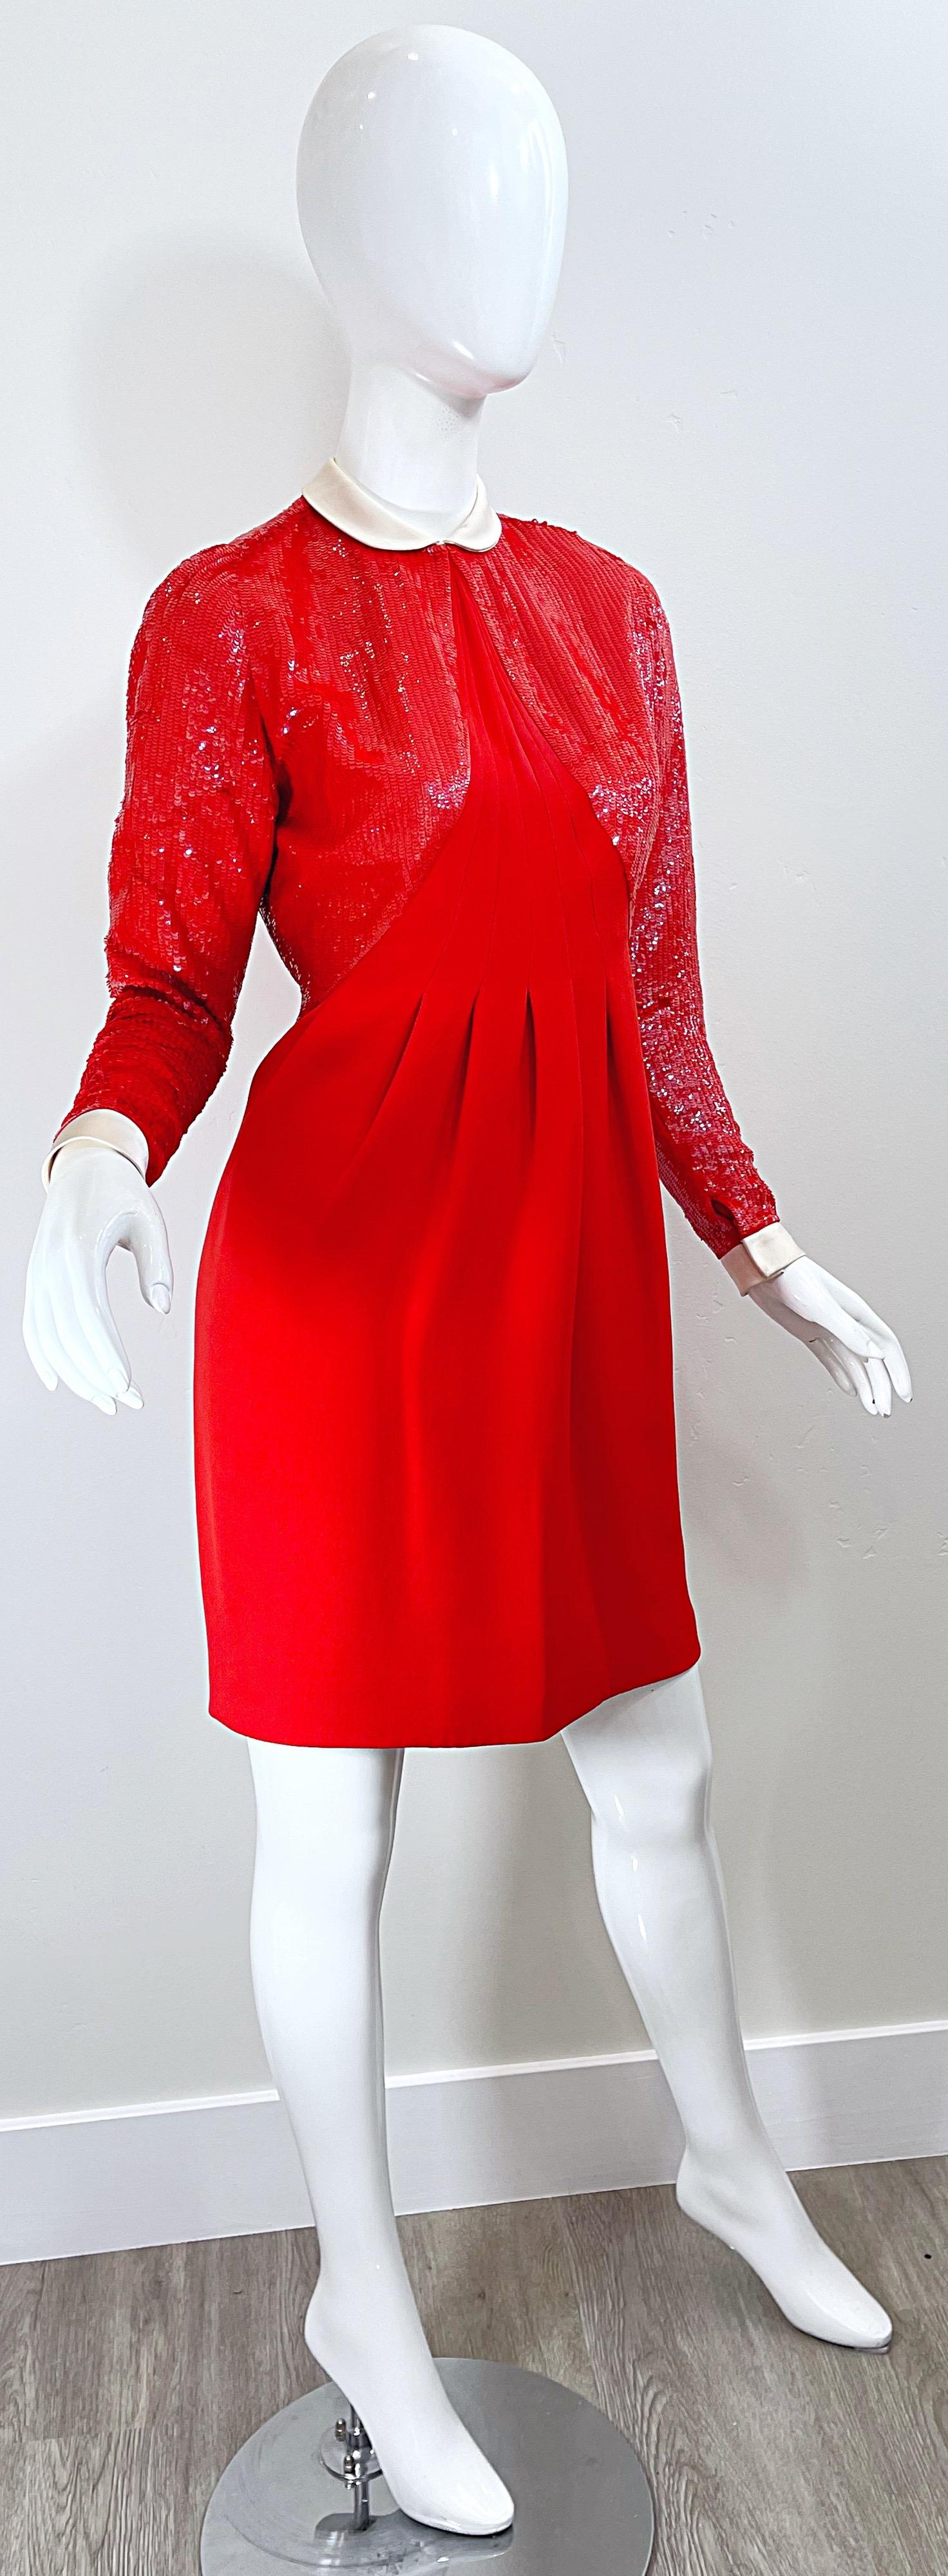 Geoffrey Beene 1980s Lipstick Red Faux Bolero Vintage 80s Tuxedo Dress  For Sale 5